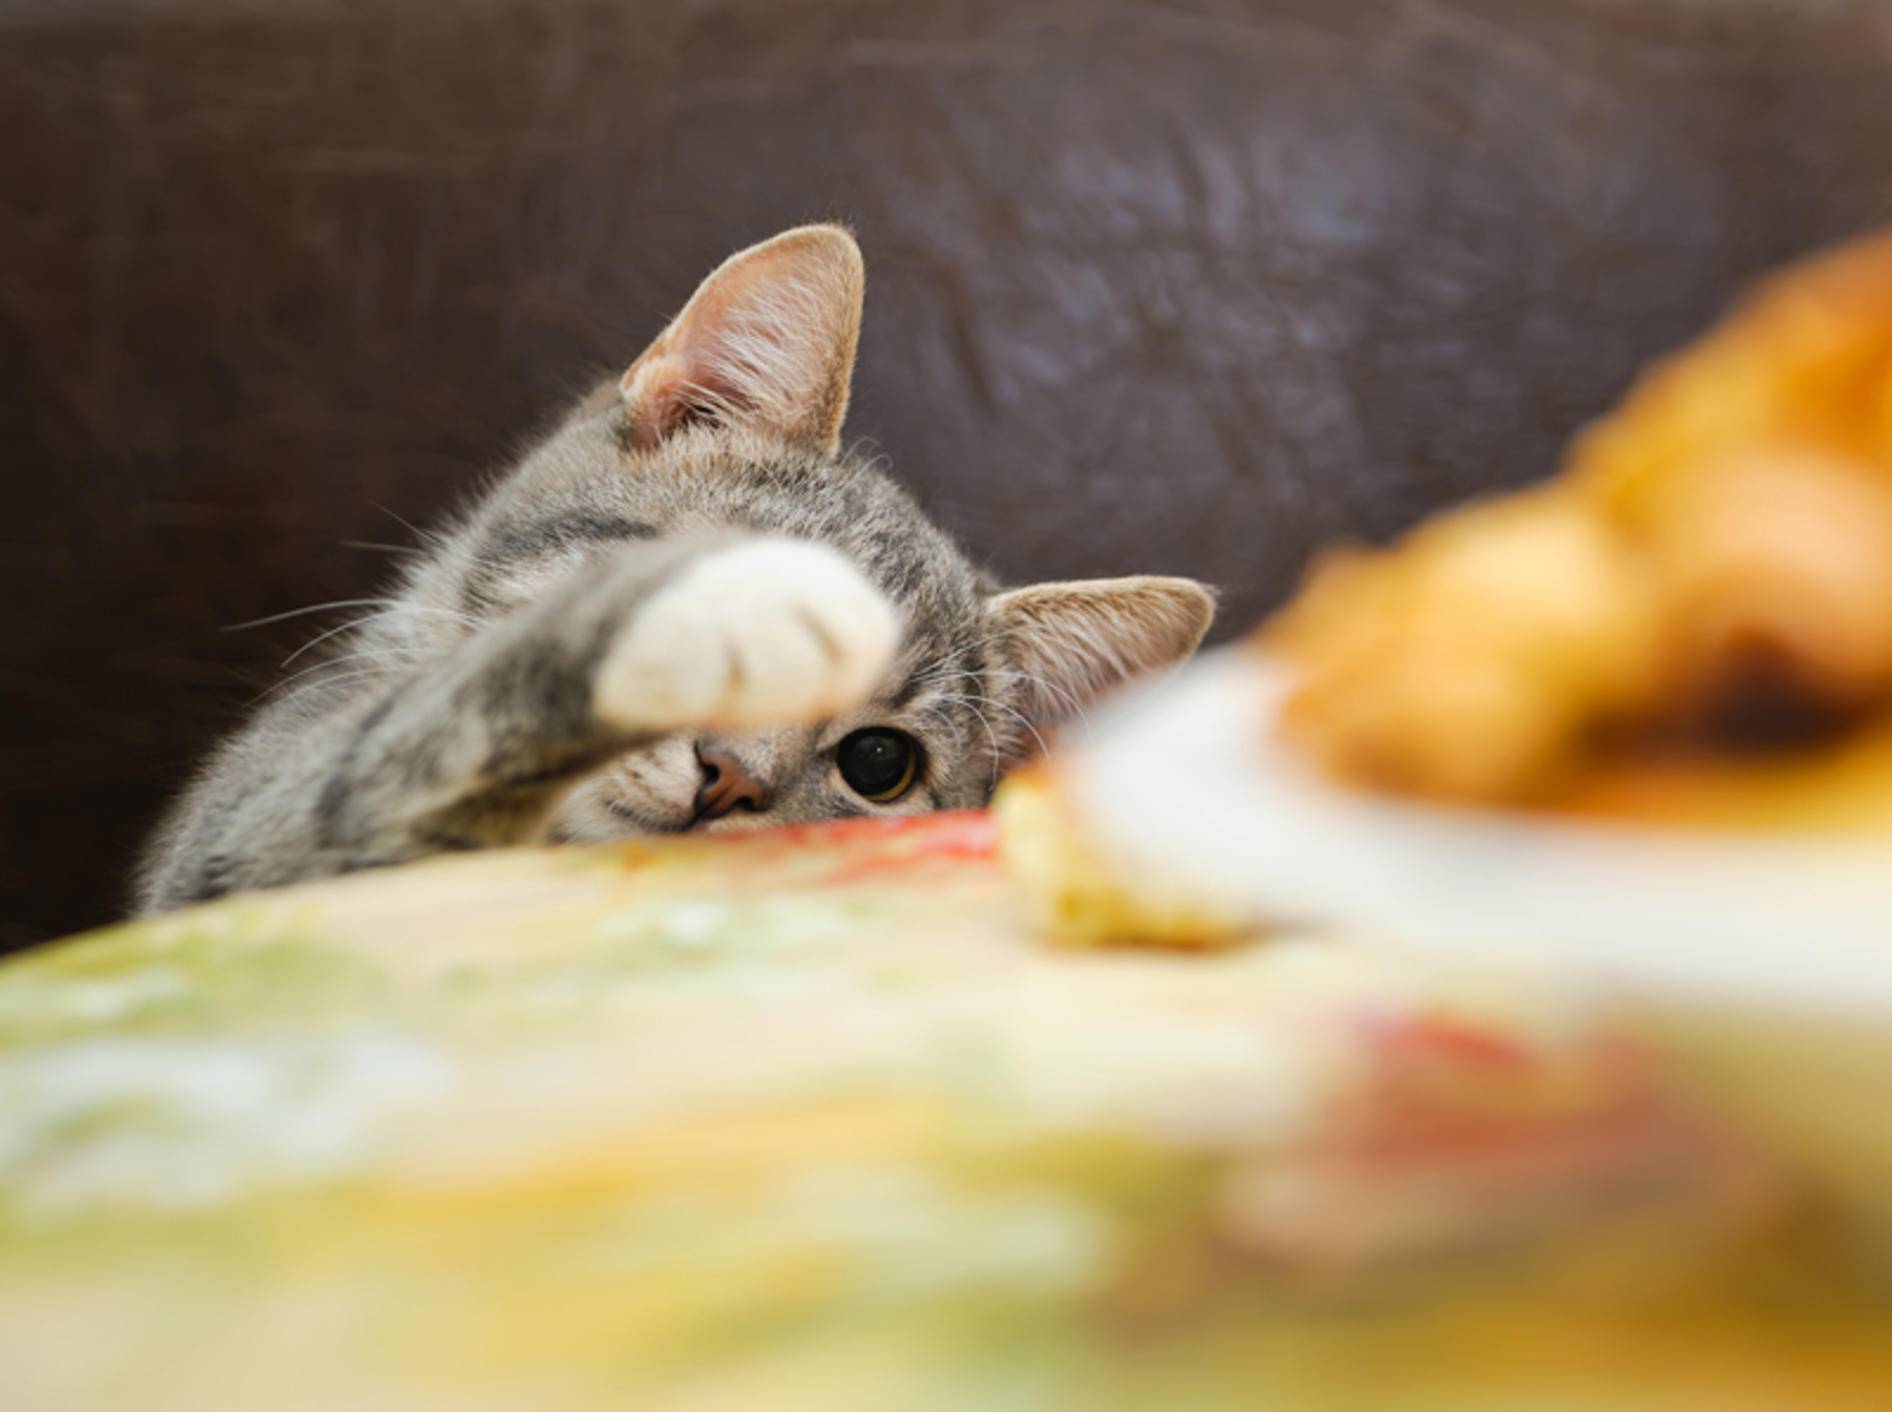 "Ich will auch ein Stück!": Katze will Essen klauen – Shutterstock / mik ulyannikov